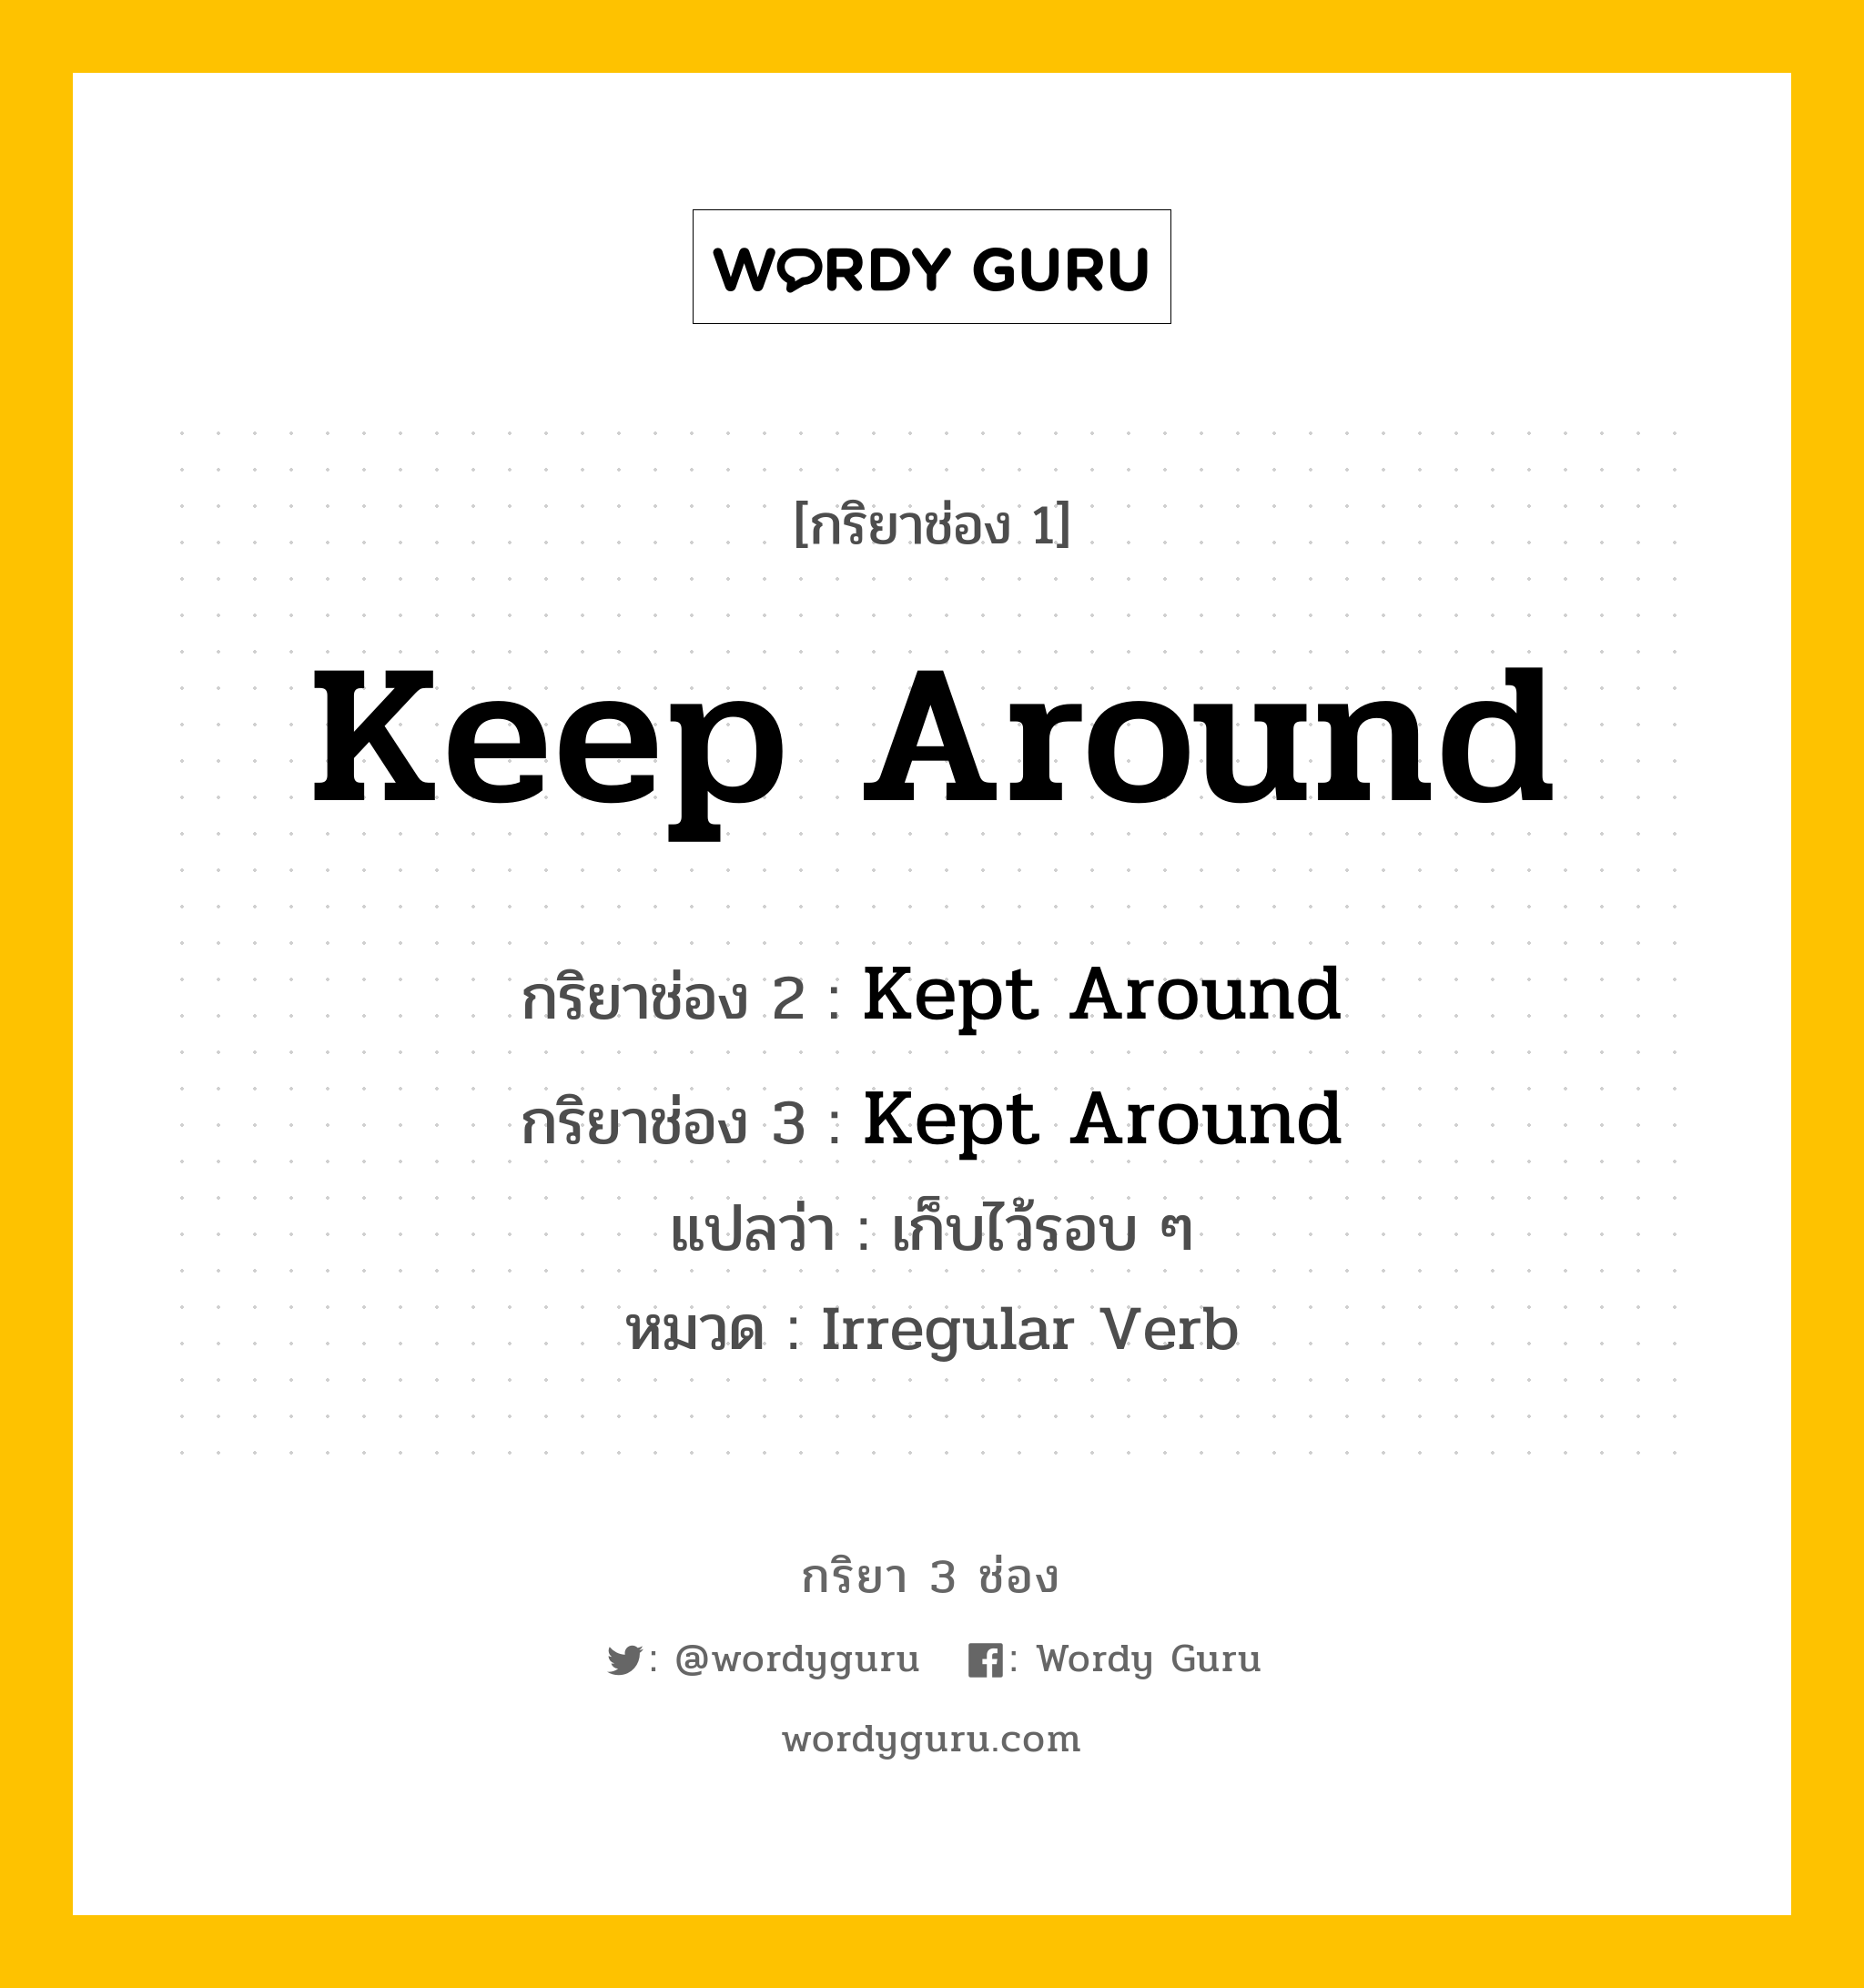 กริยา 3 ช่อง: Keep Around ช่อง 2 Keep Around ช่อง 3 คืออะไร, กริยาช่อง 1 Keep Around กริยาช่อง 2 Kept Around กริยาช่อง 3 Kept Around แปลว่า เก็บไว้รอบ ๆ หมวด Irregular Verb หมวด Irregular Verb